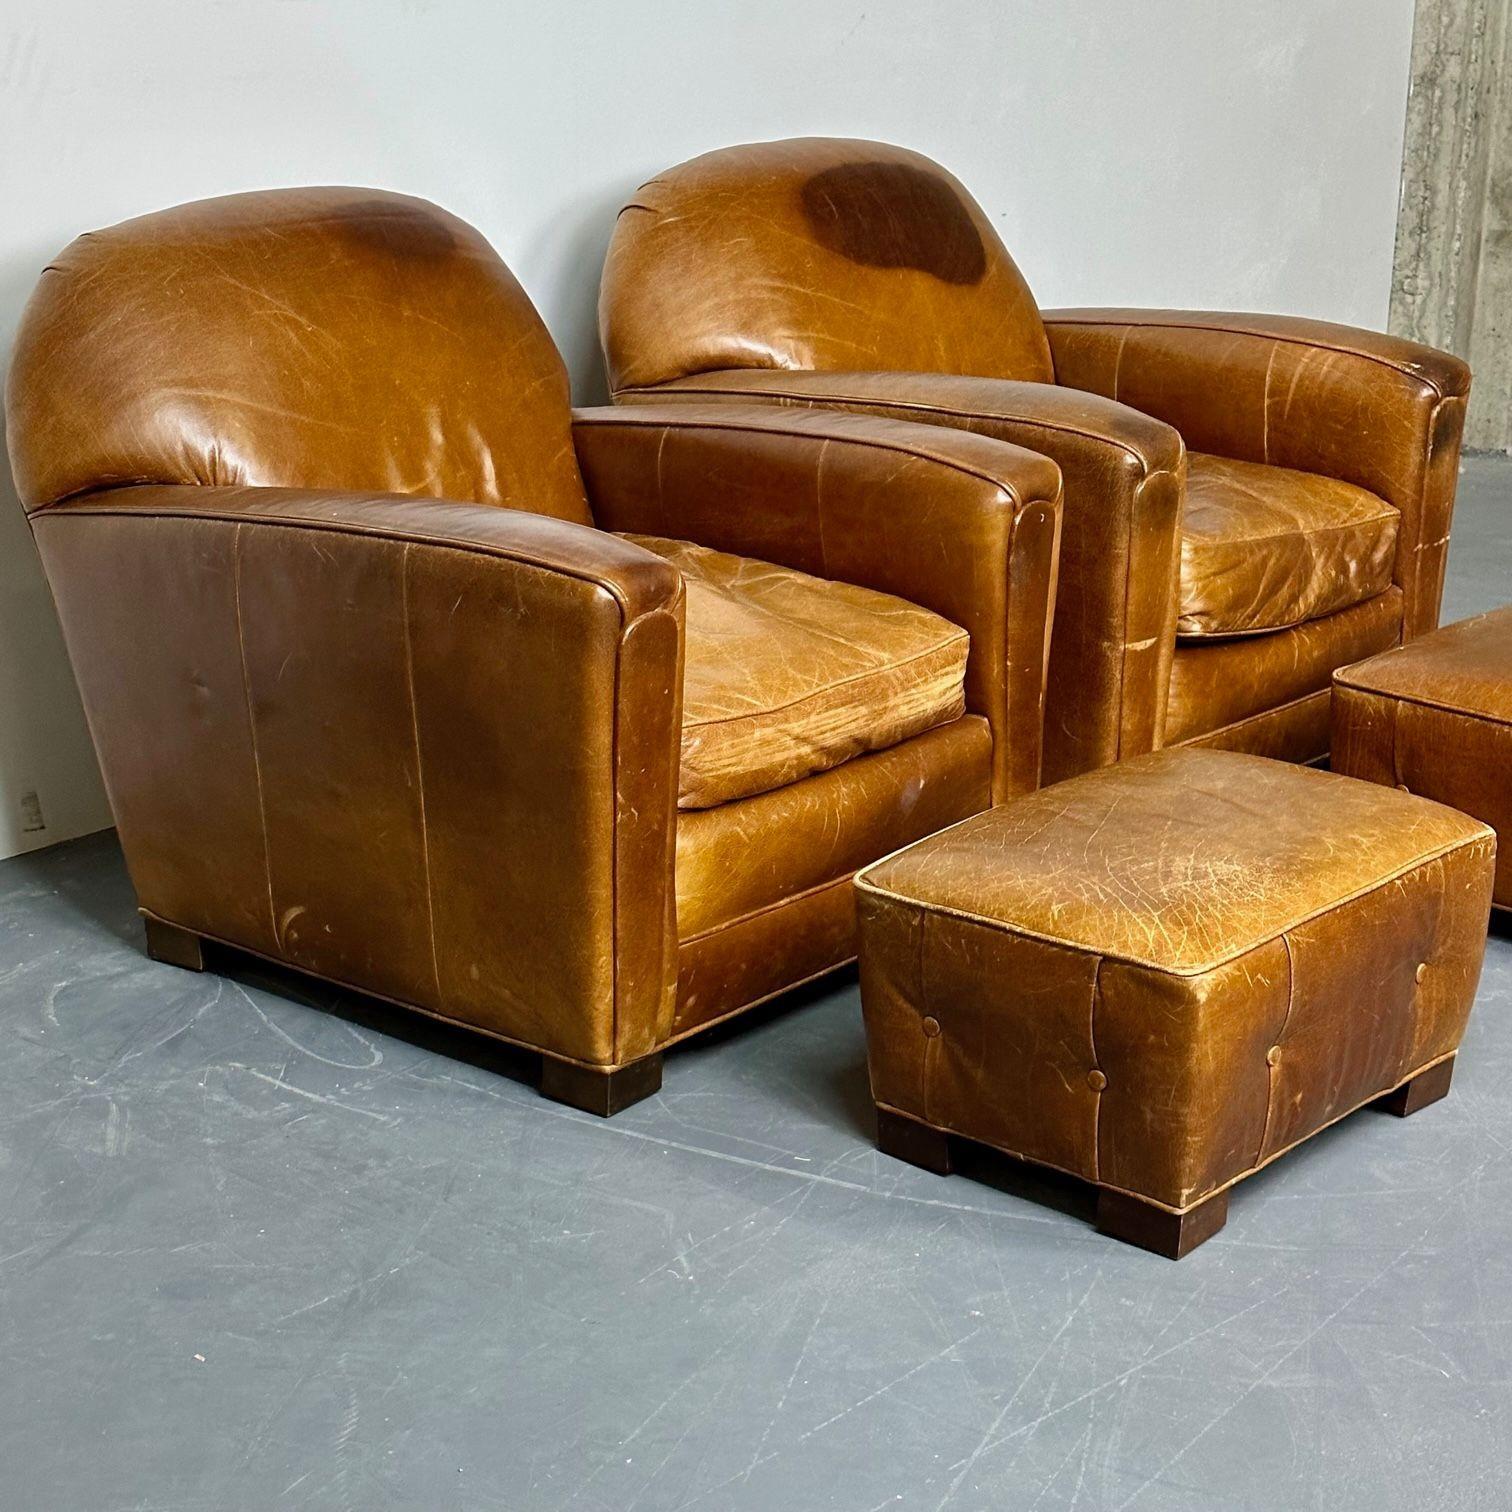 Paar große Art Deco notleidenden Leder Französisch Club / Lounge-Stühle.
 
Ein schönes Beispiel für das Design von Art-Deco-Lounge-/Clubsesseln, begleitet von einem seltenen Paar Fußhocker, die separat verkauft werden. Diese großen und